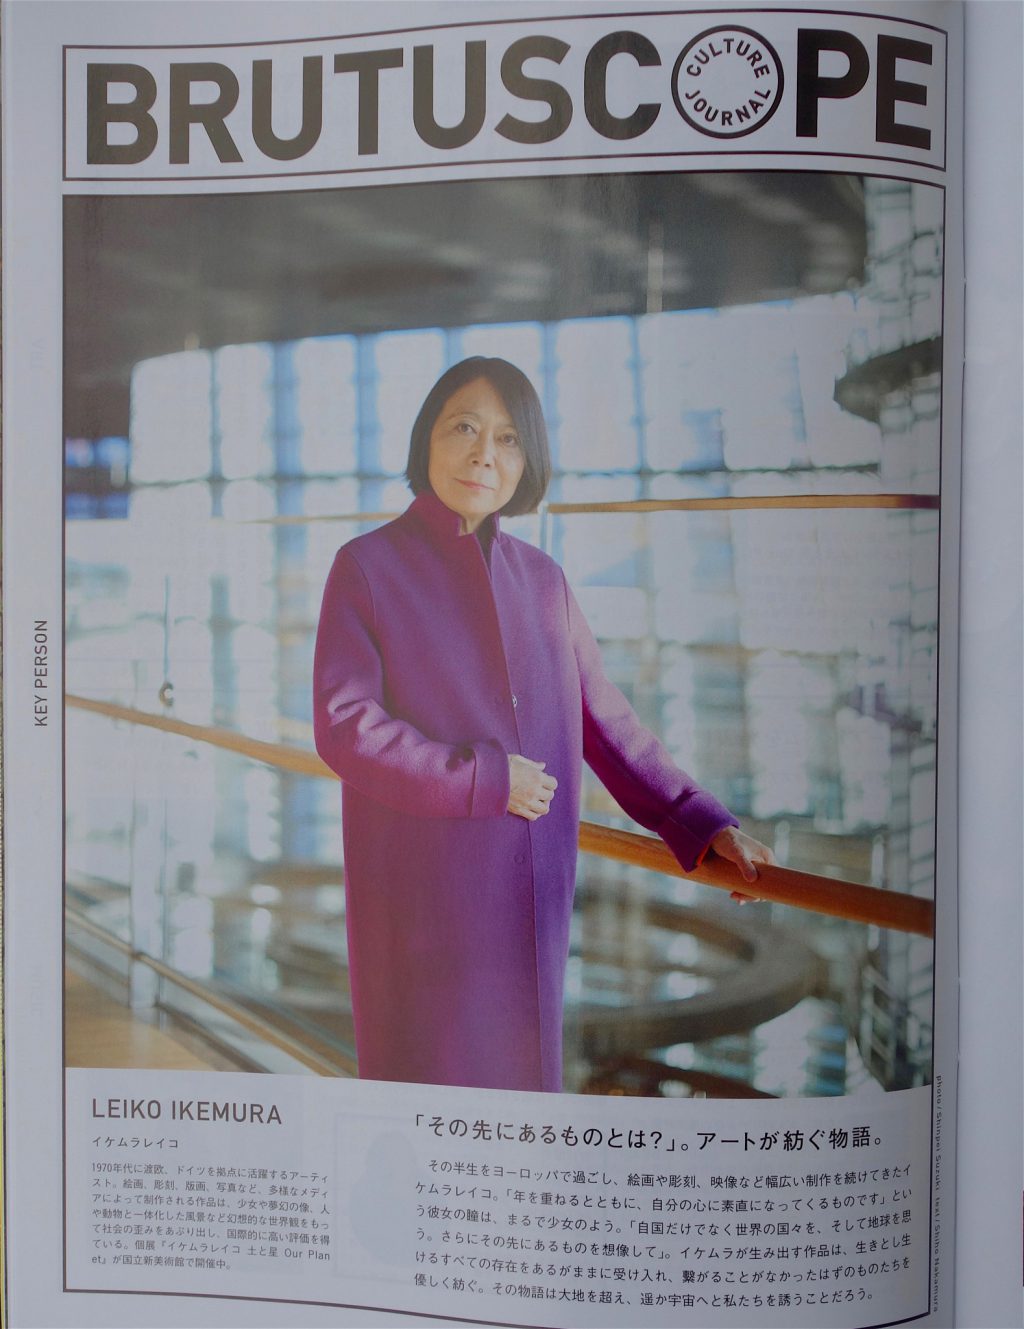 イケムラレイコ IKEMURA Leiko @ BRUTUS Magazine 2019:2:15. page 105-6